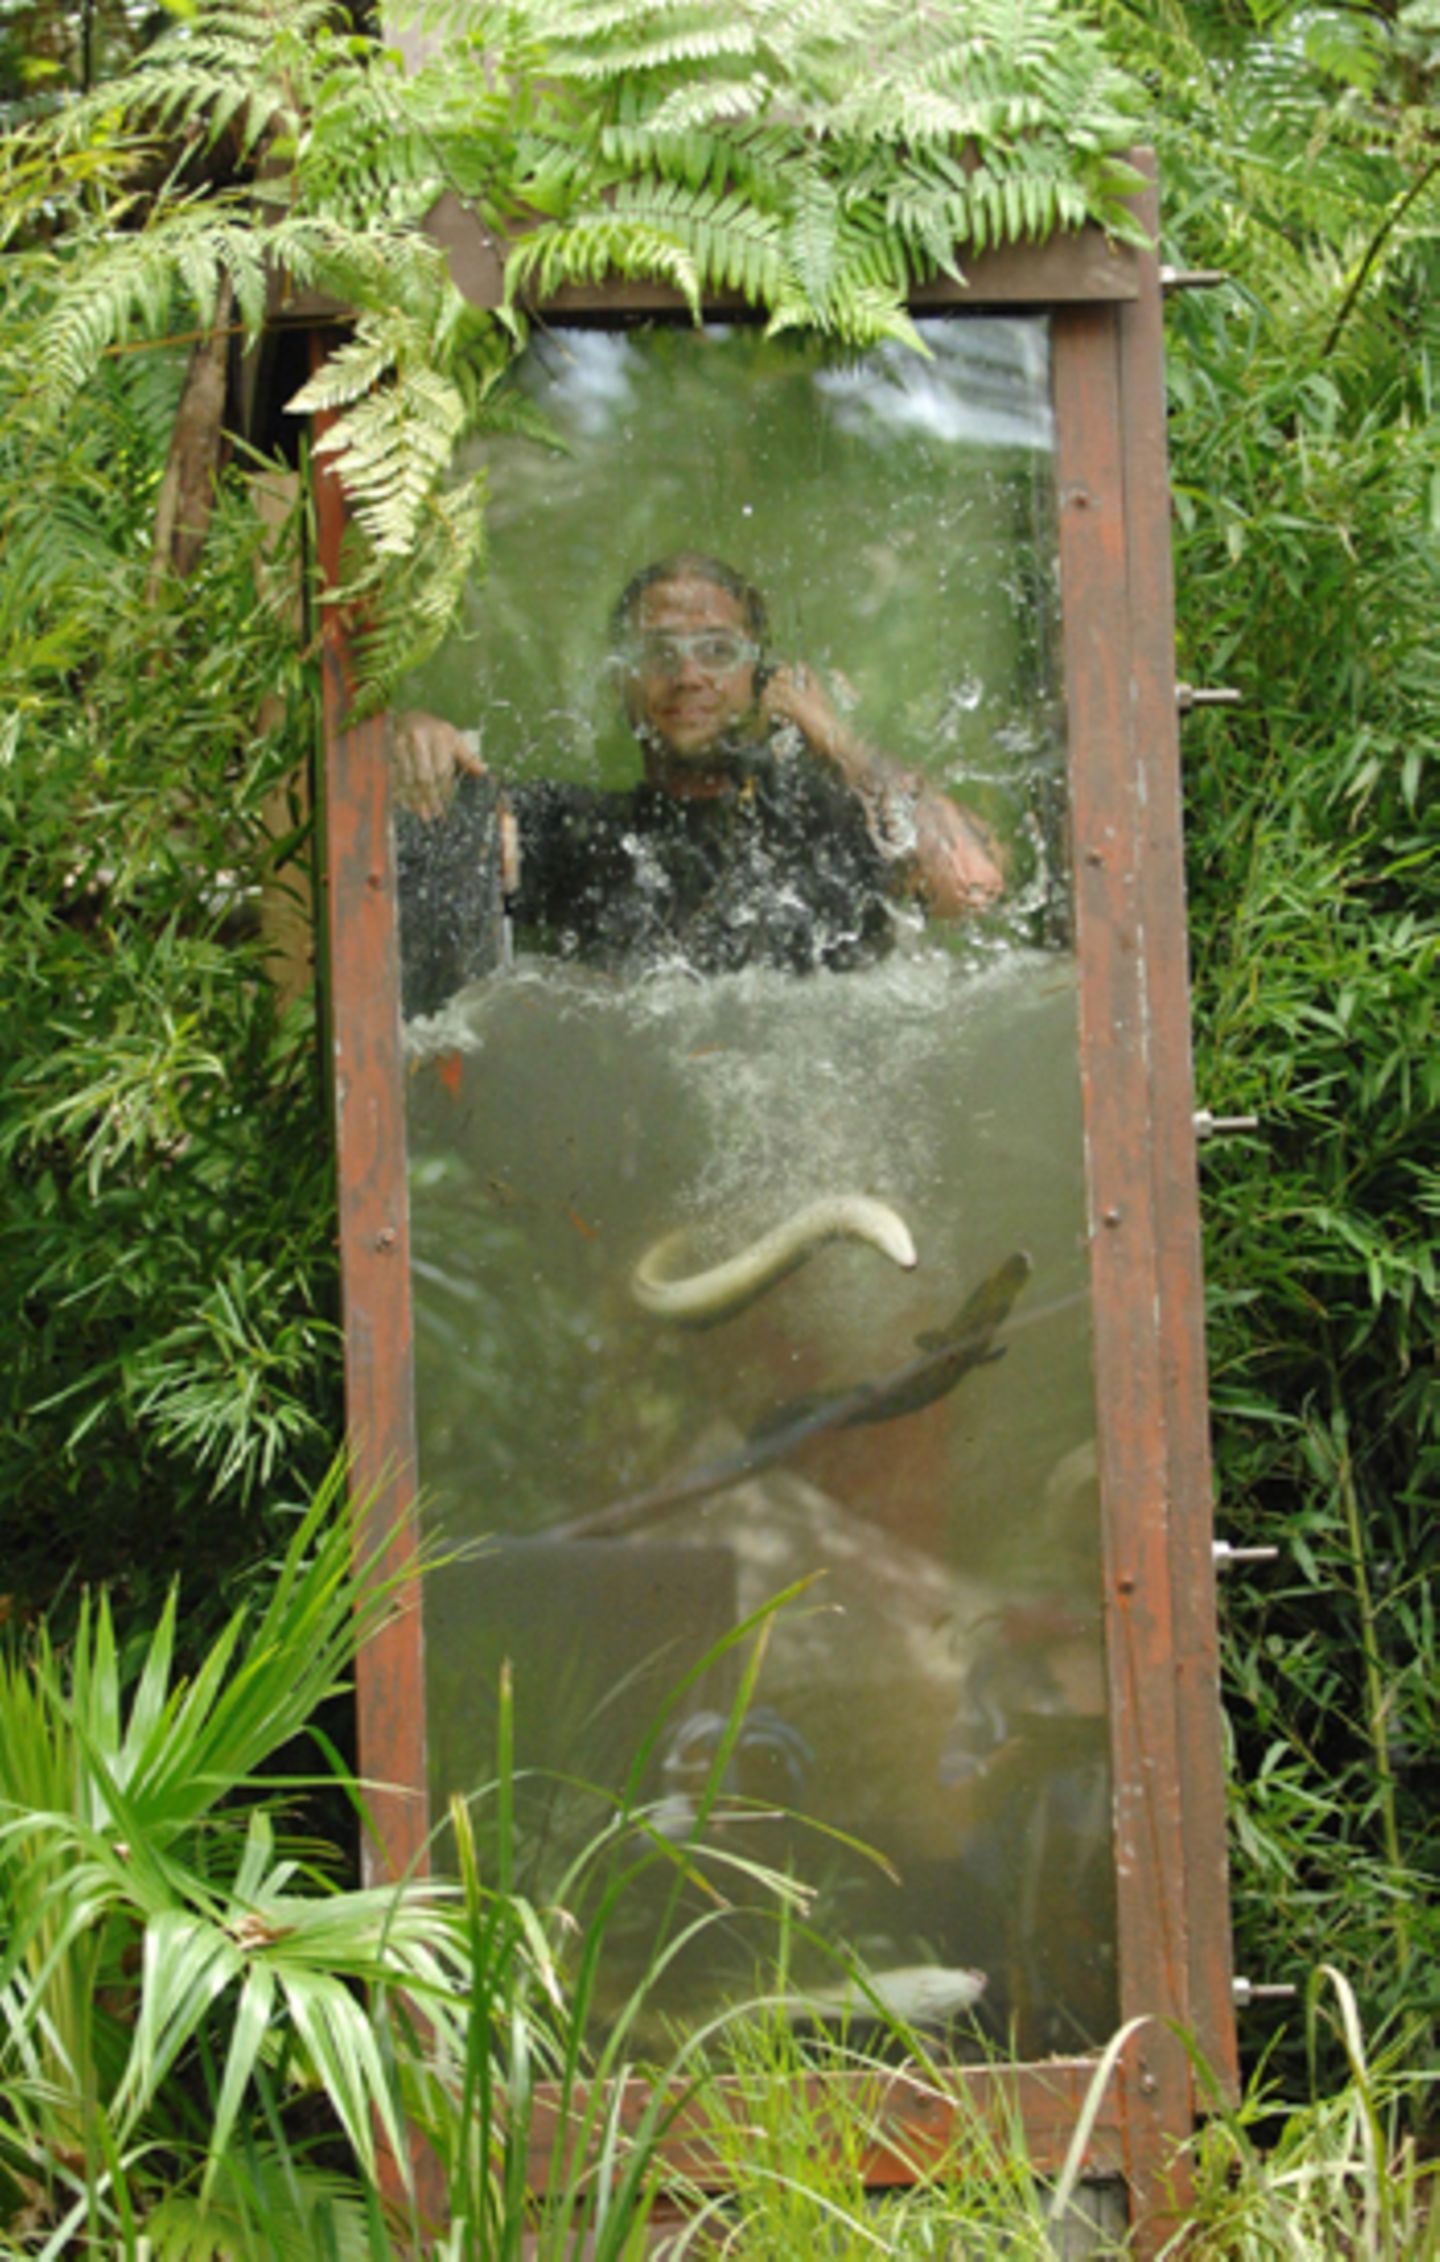 Am siebten Tag haben die Zuschauer Martin Kesici zur Dschungelprüfung erkoren. Obwohl er Angst vor Wasser hat, lässt sich der Be